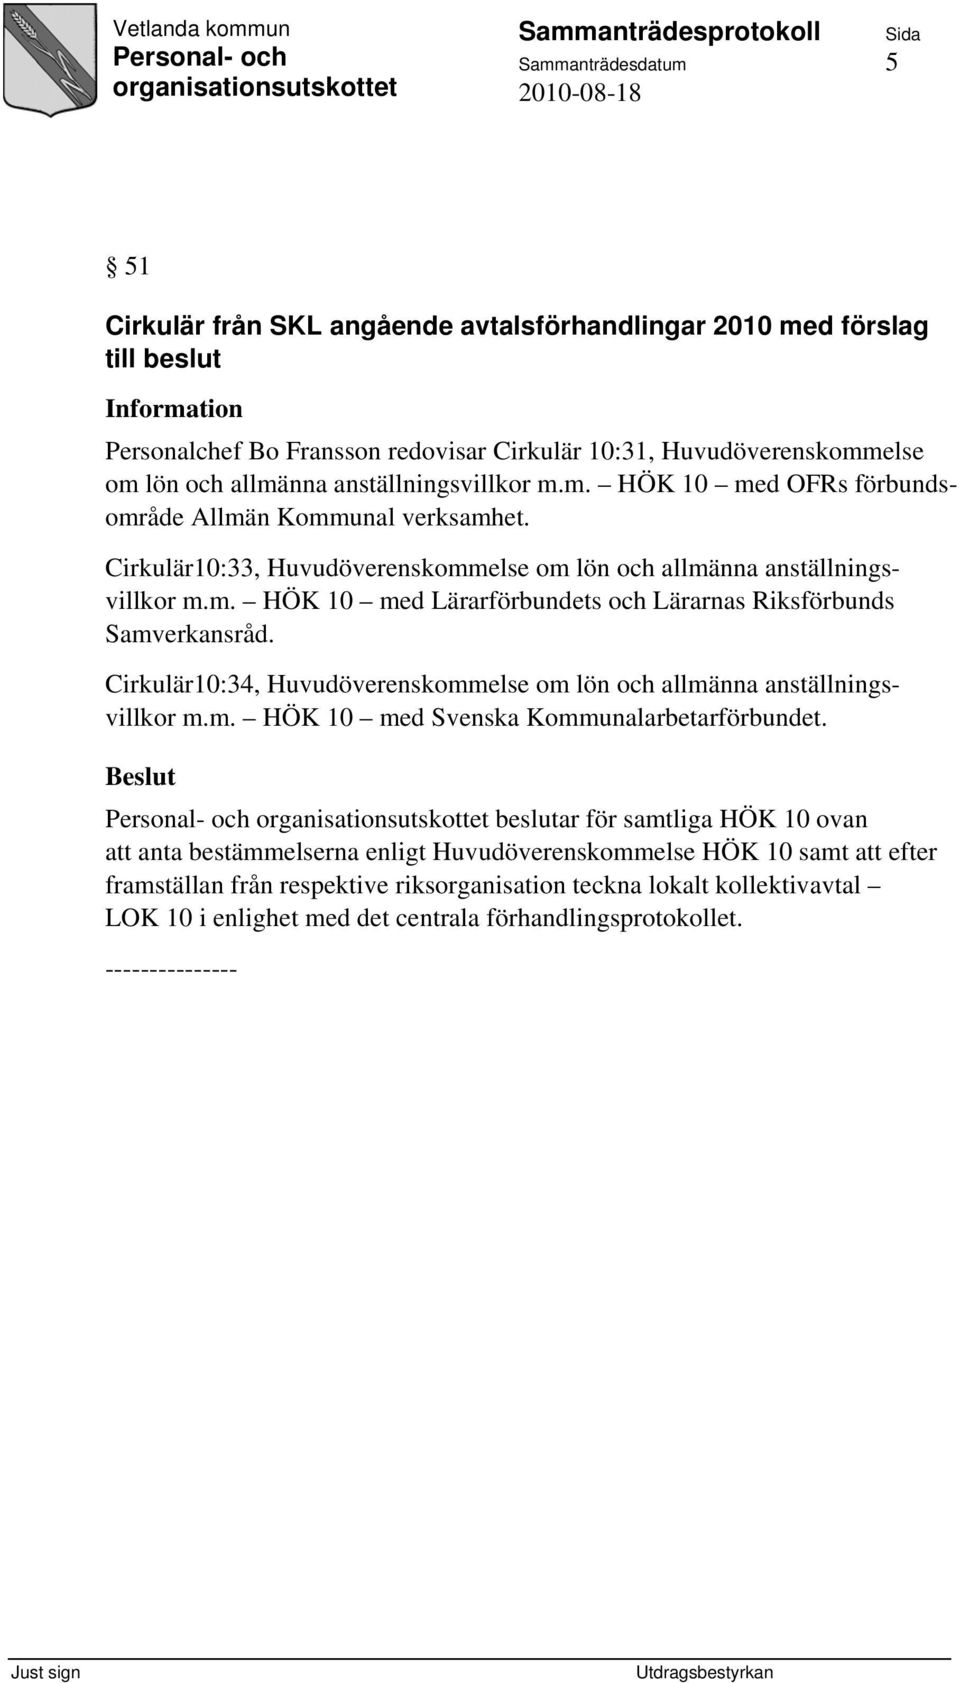 Cirkulär10:34, Huvudöverenskommelse om lön och allmänna anställningsvillkor m.m. HÖK 10 med Svenska Kommunalarbetarförbundet.